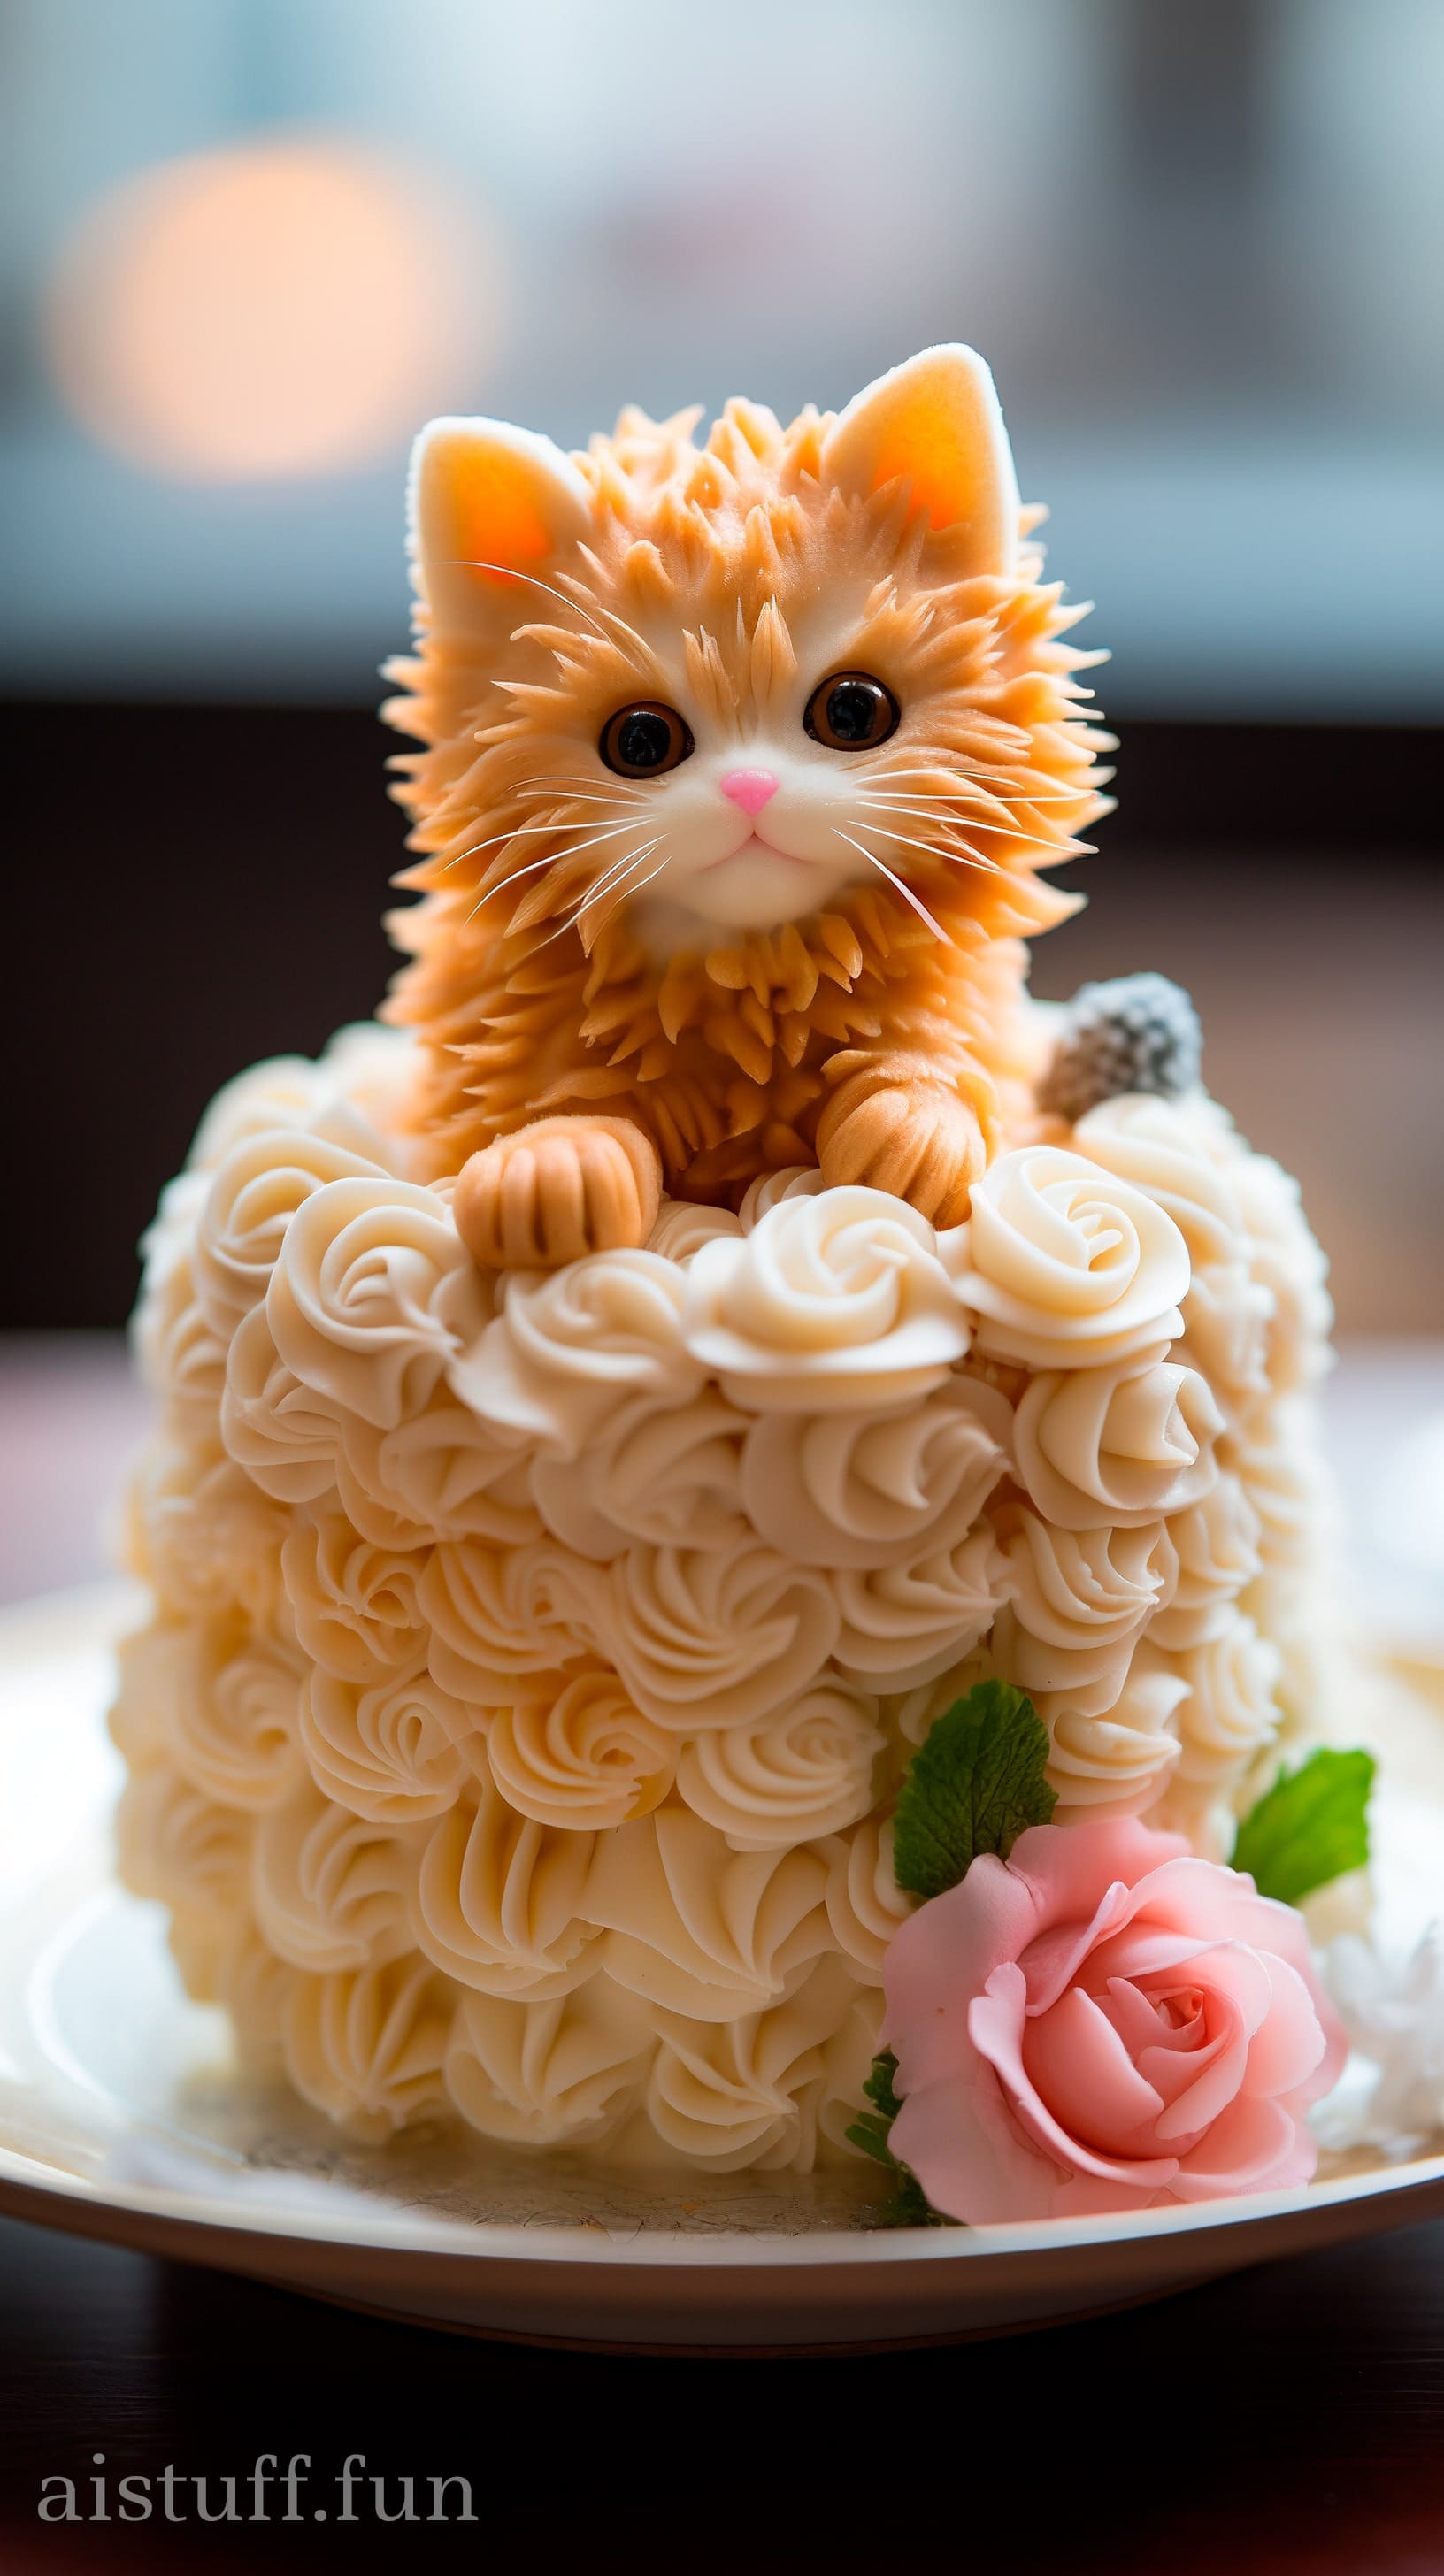 маленький торт с игрушечным котенком наверху